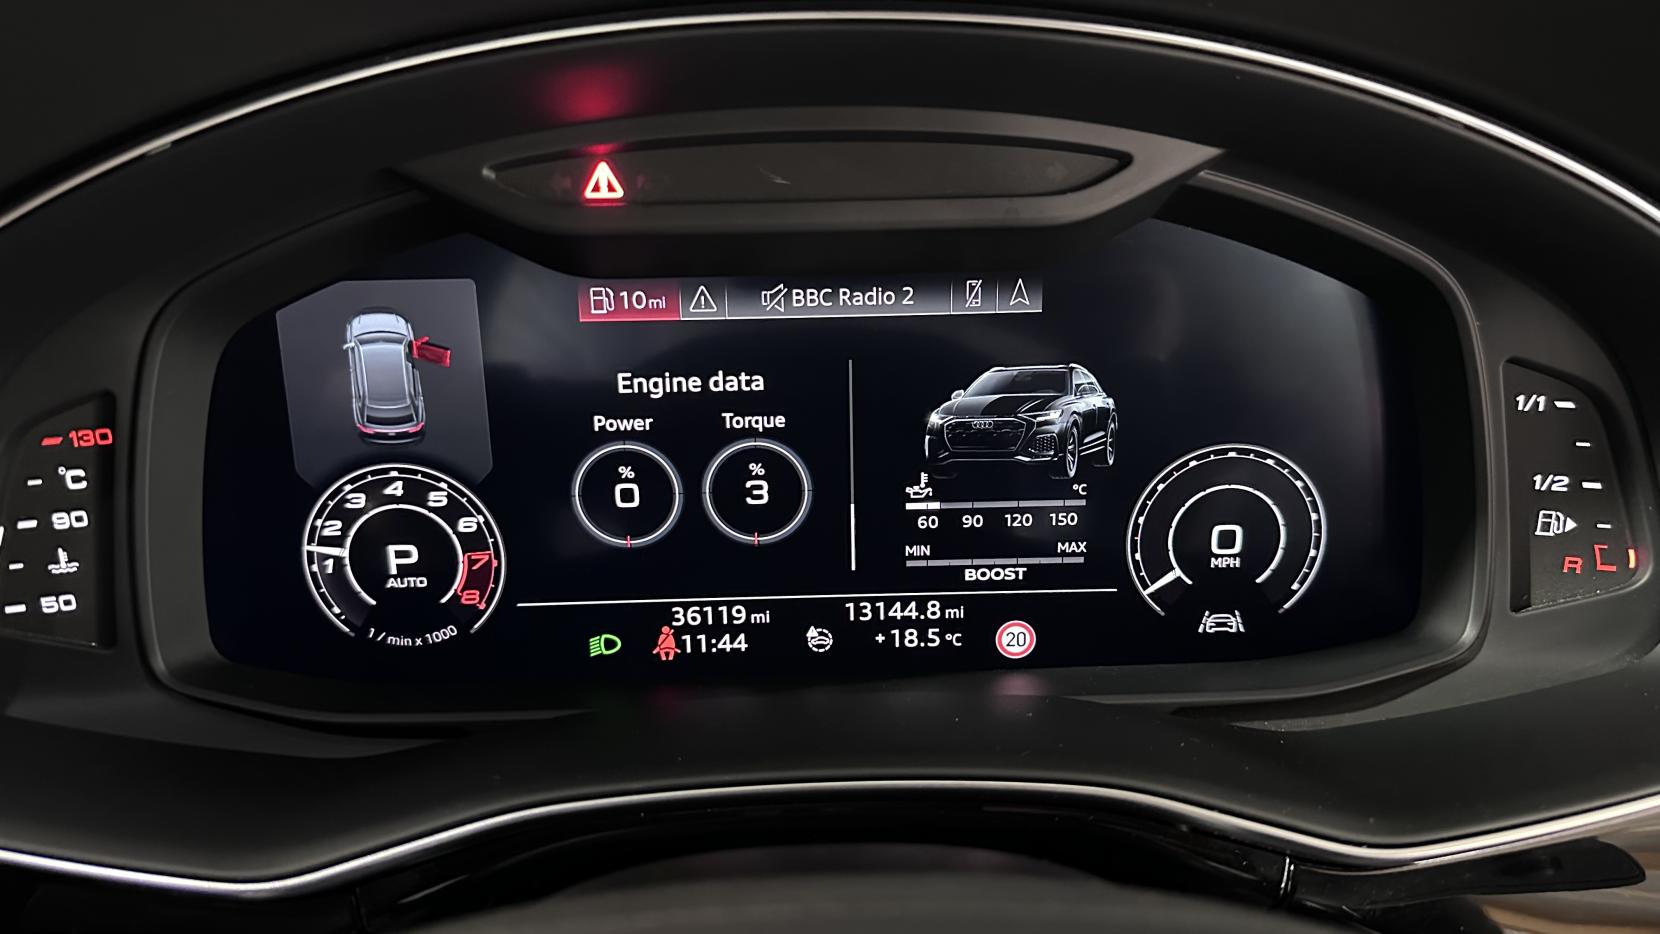 Audi RSQ8 4.0 TFSI V8 Carbon Black SUV 5dr Petrol Tiptronic quattro Euro 6 (s/s) (600 ps)